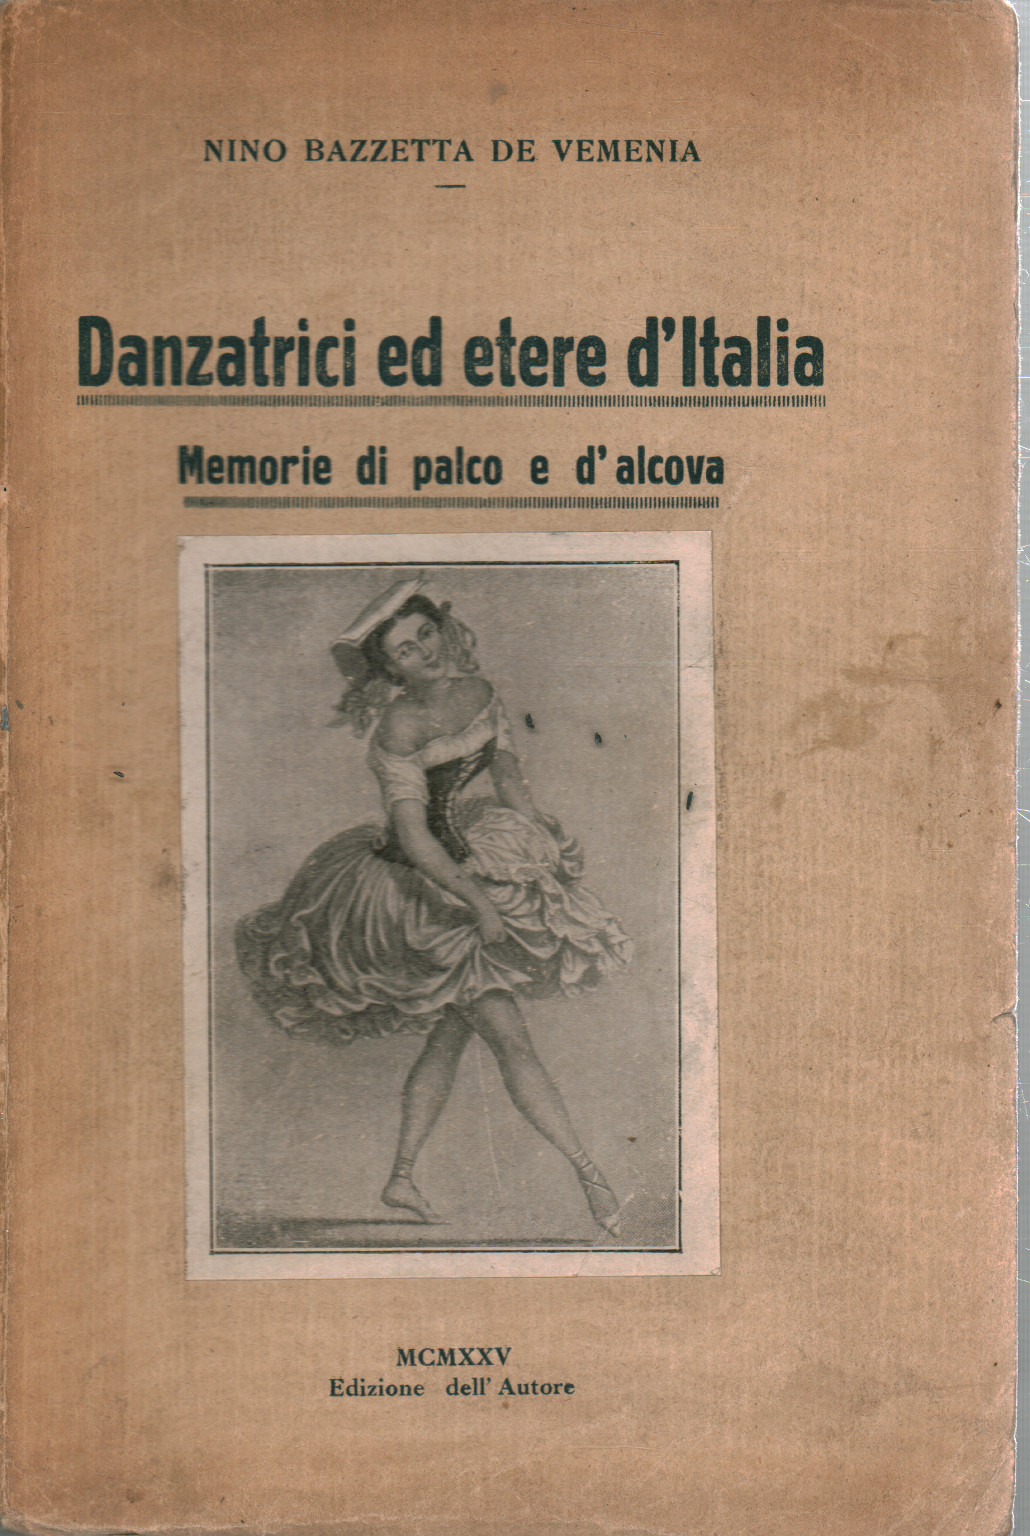 Los bailarines y el éter d'italia, s.una.